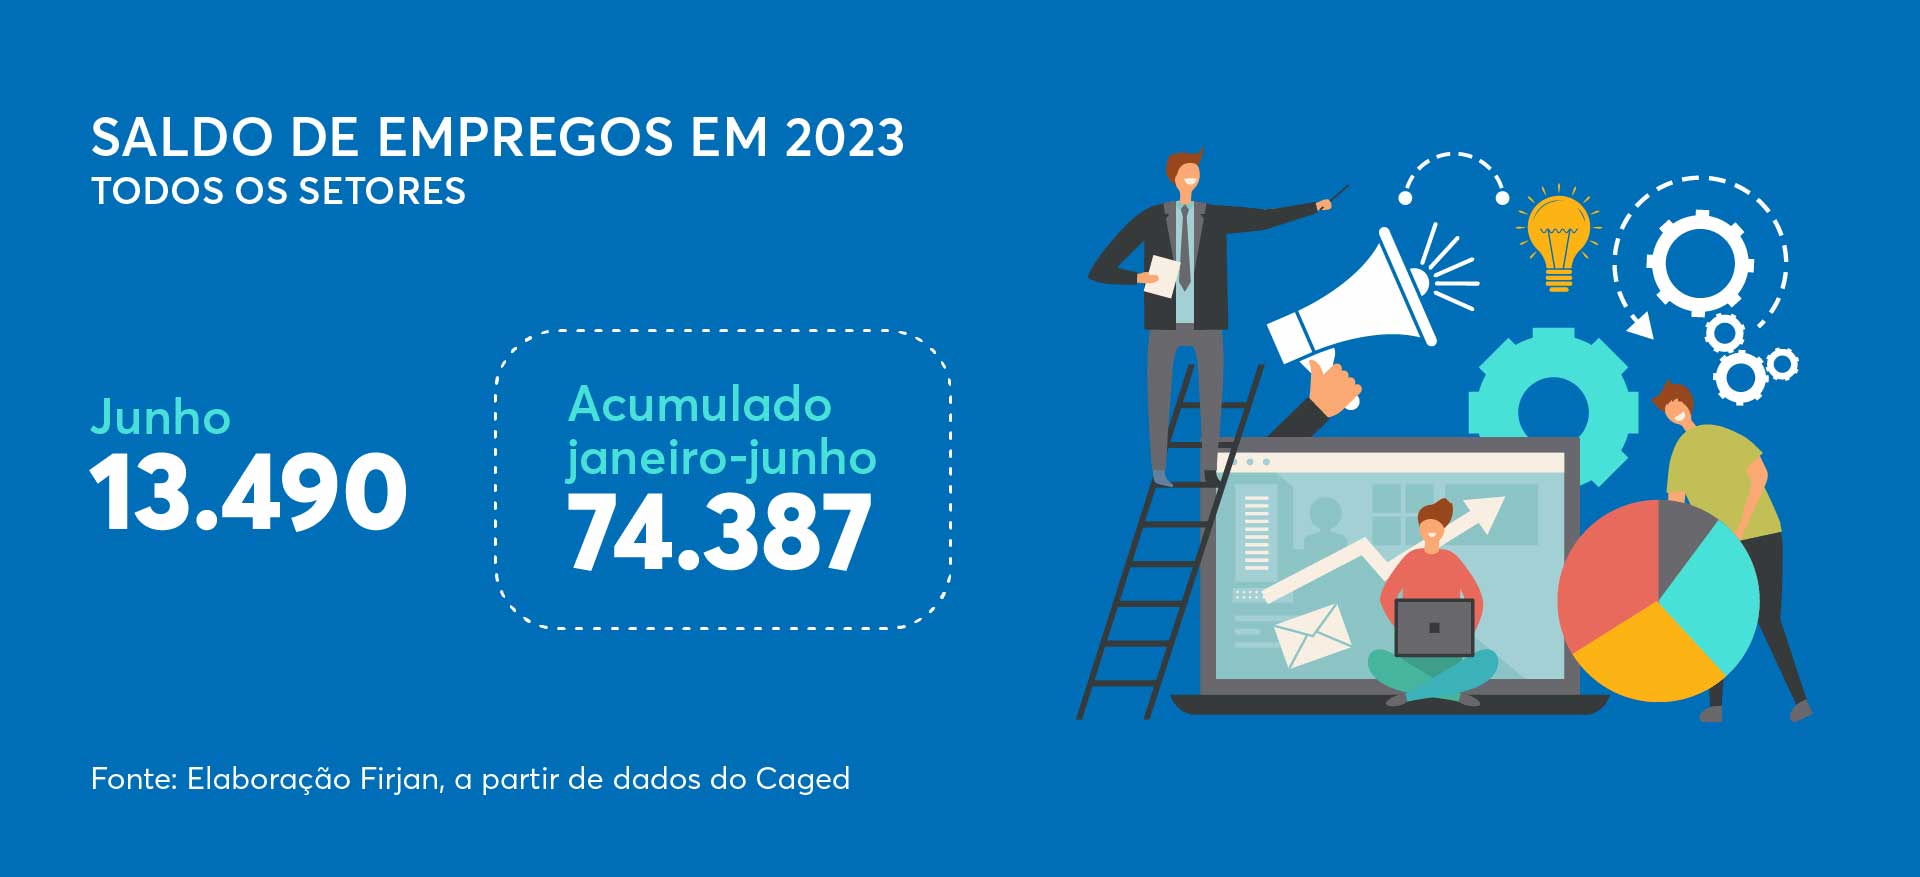 Saldo empregos em 2023 no estado do Rio de Janeiro